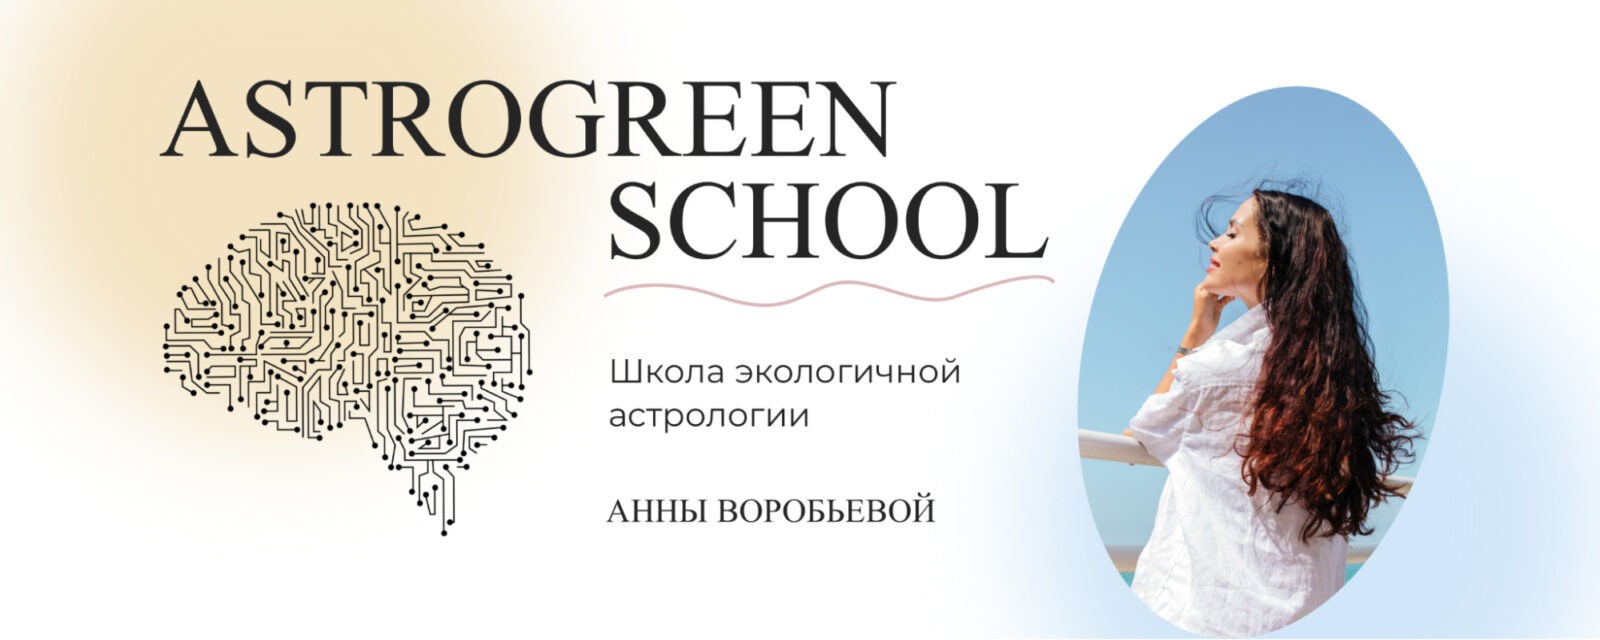 Школа астрологии "Астрогрин"  сайт